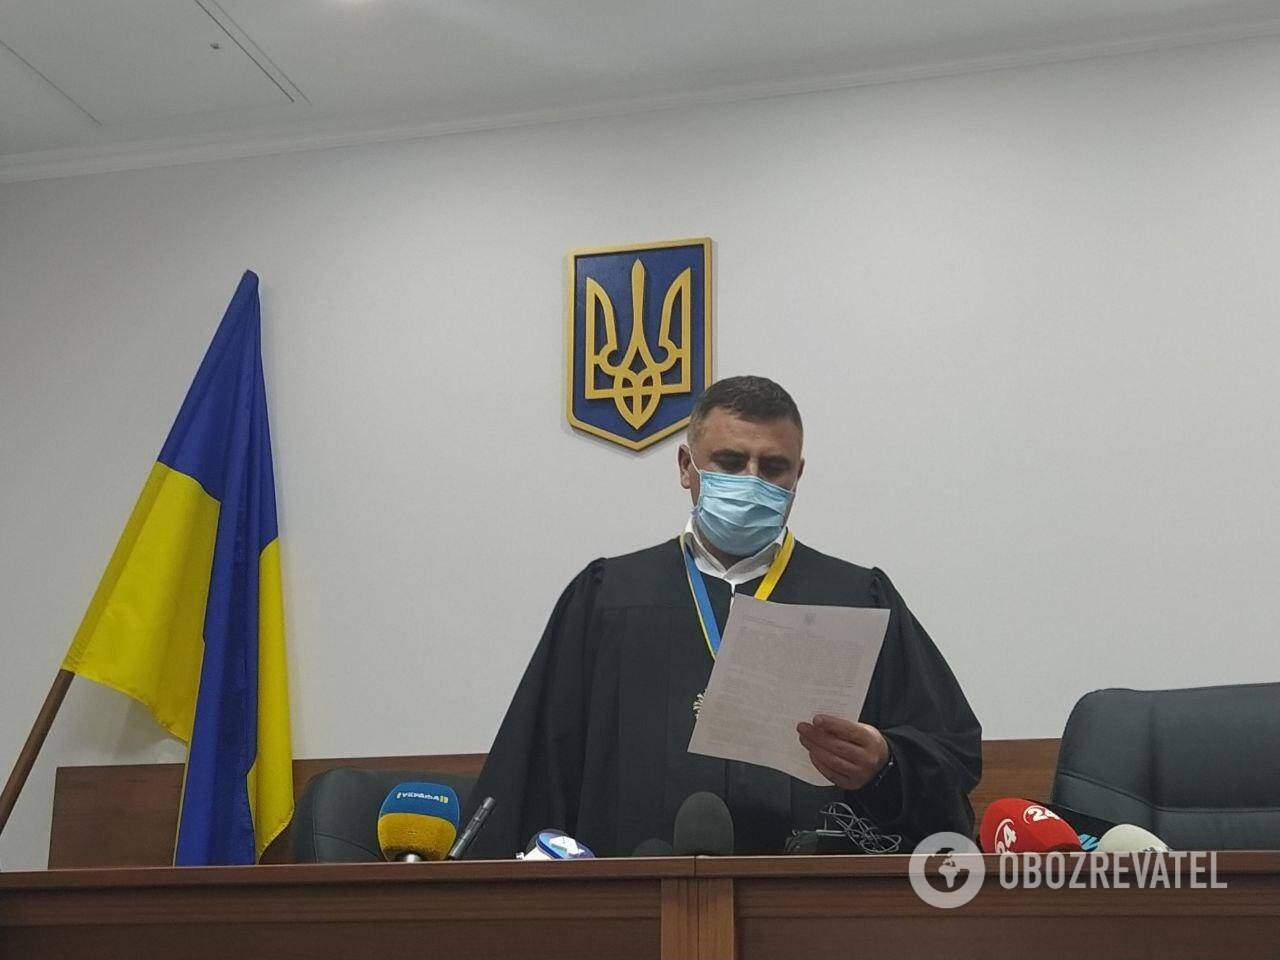 Суд арестовал подозреваемого в совершении ДТП в Киеве с четырьмя погибшими Желепу. Судья